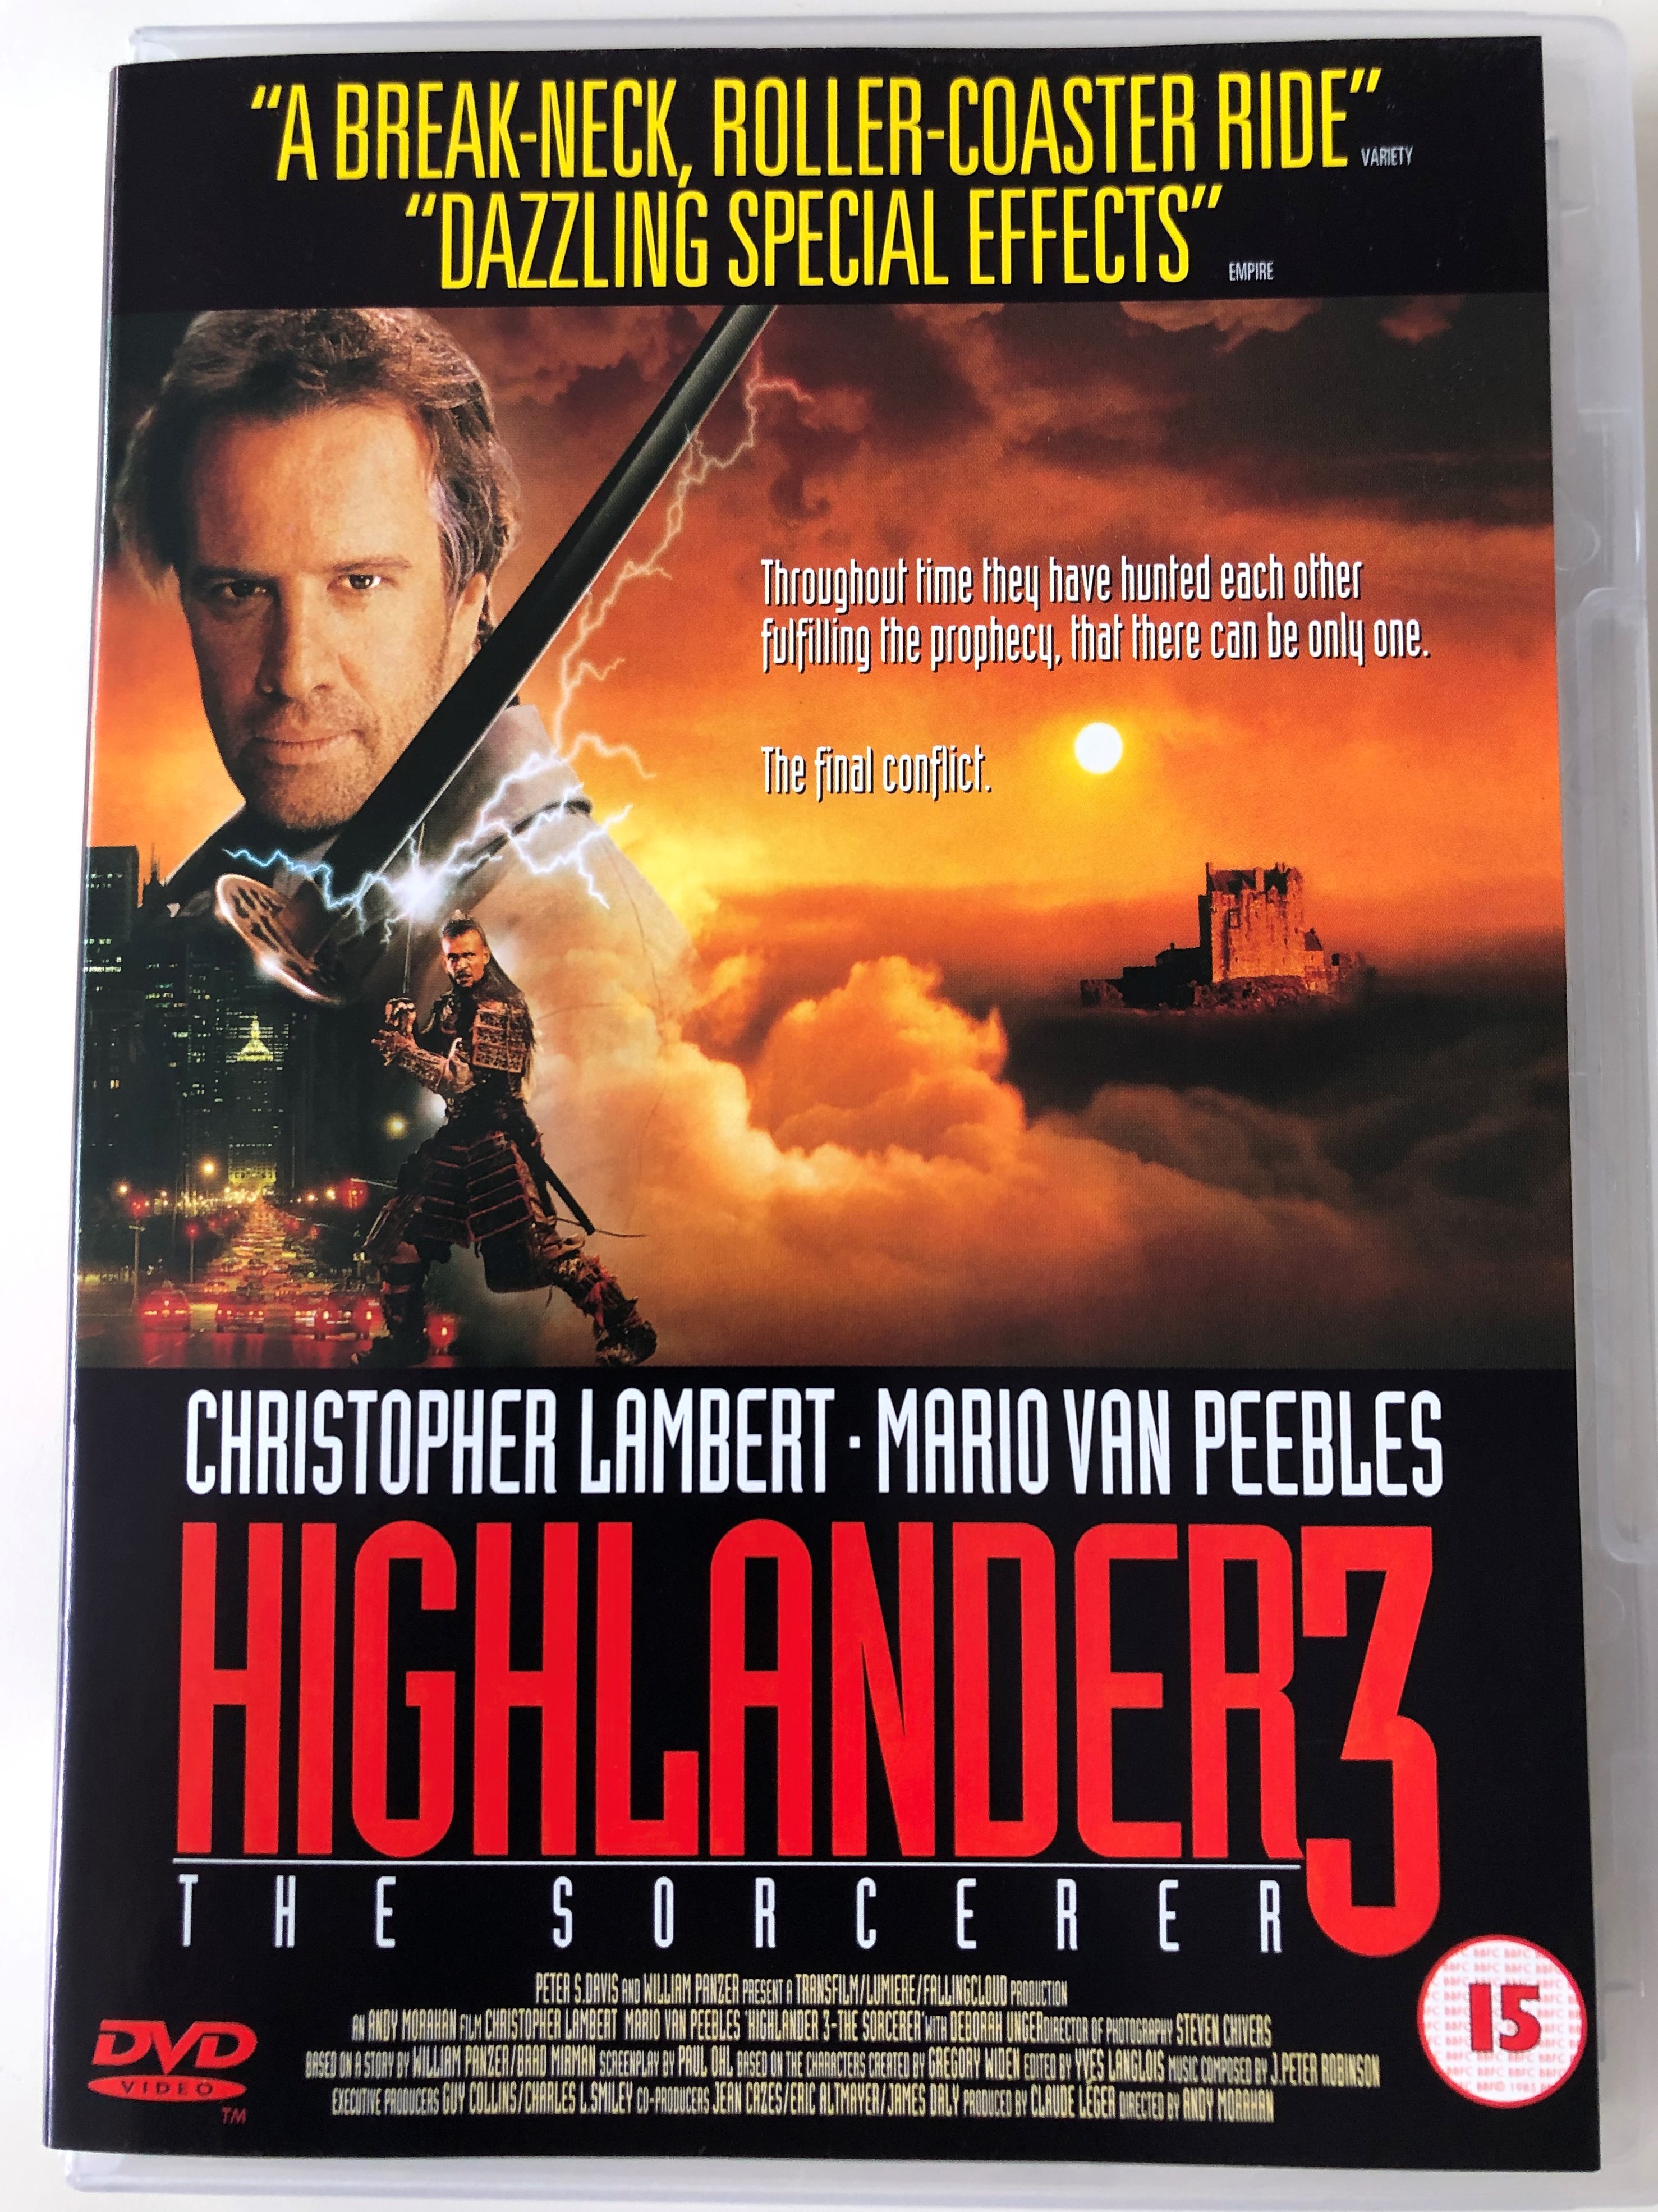 Highlander 3 - The Sorcerer DVD 1994 / Directed by Andrew Morahan /  Starring: Christopher Lambert, Mario Van Peebles, Deborah Unger -  bibleinmylanguage